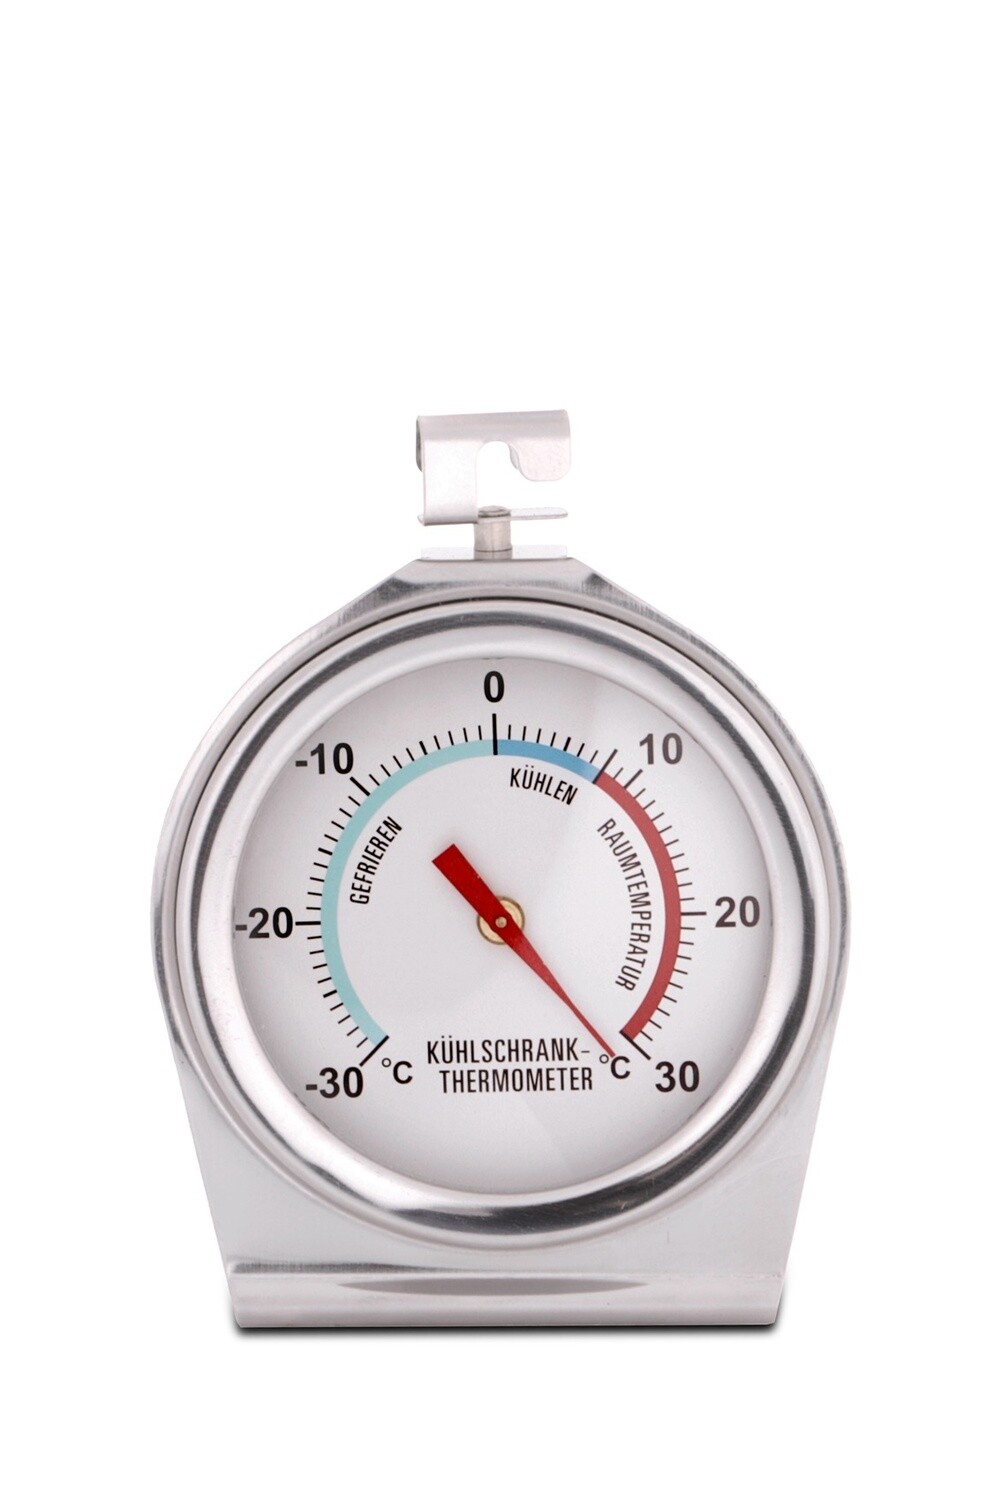 Weis - Kühlschrank-Thermometer groß